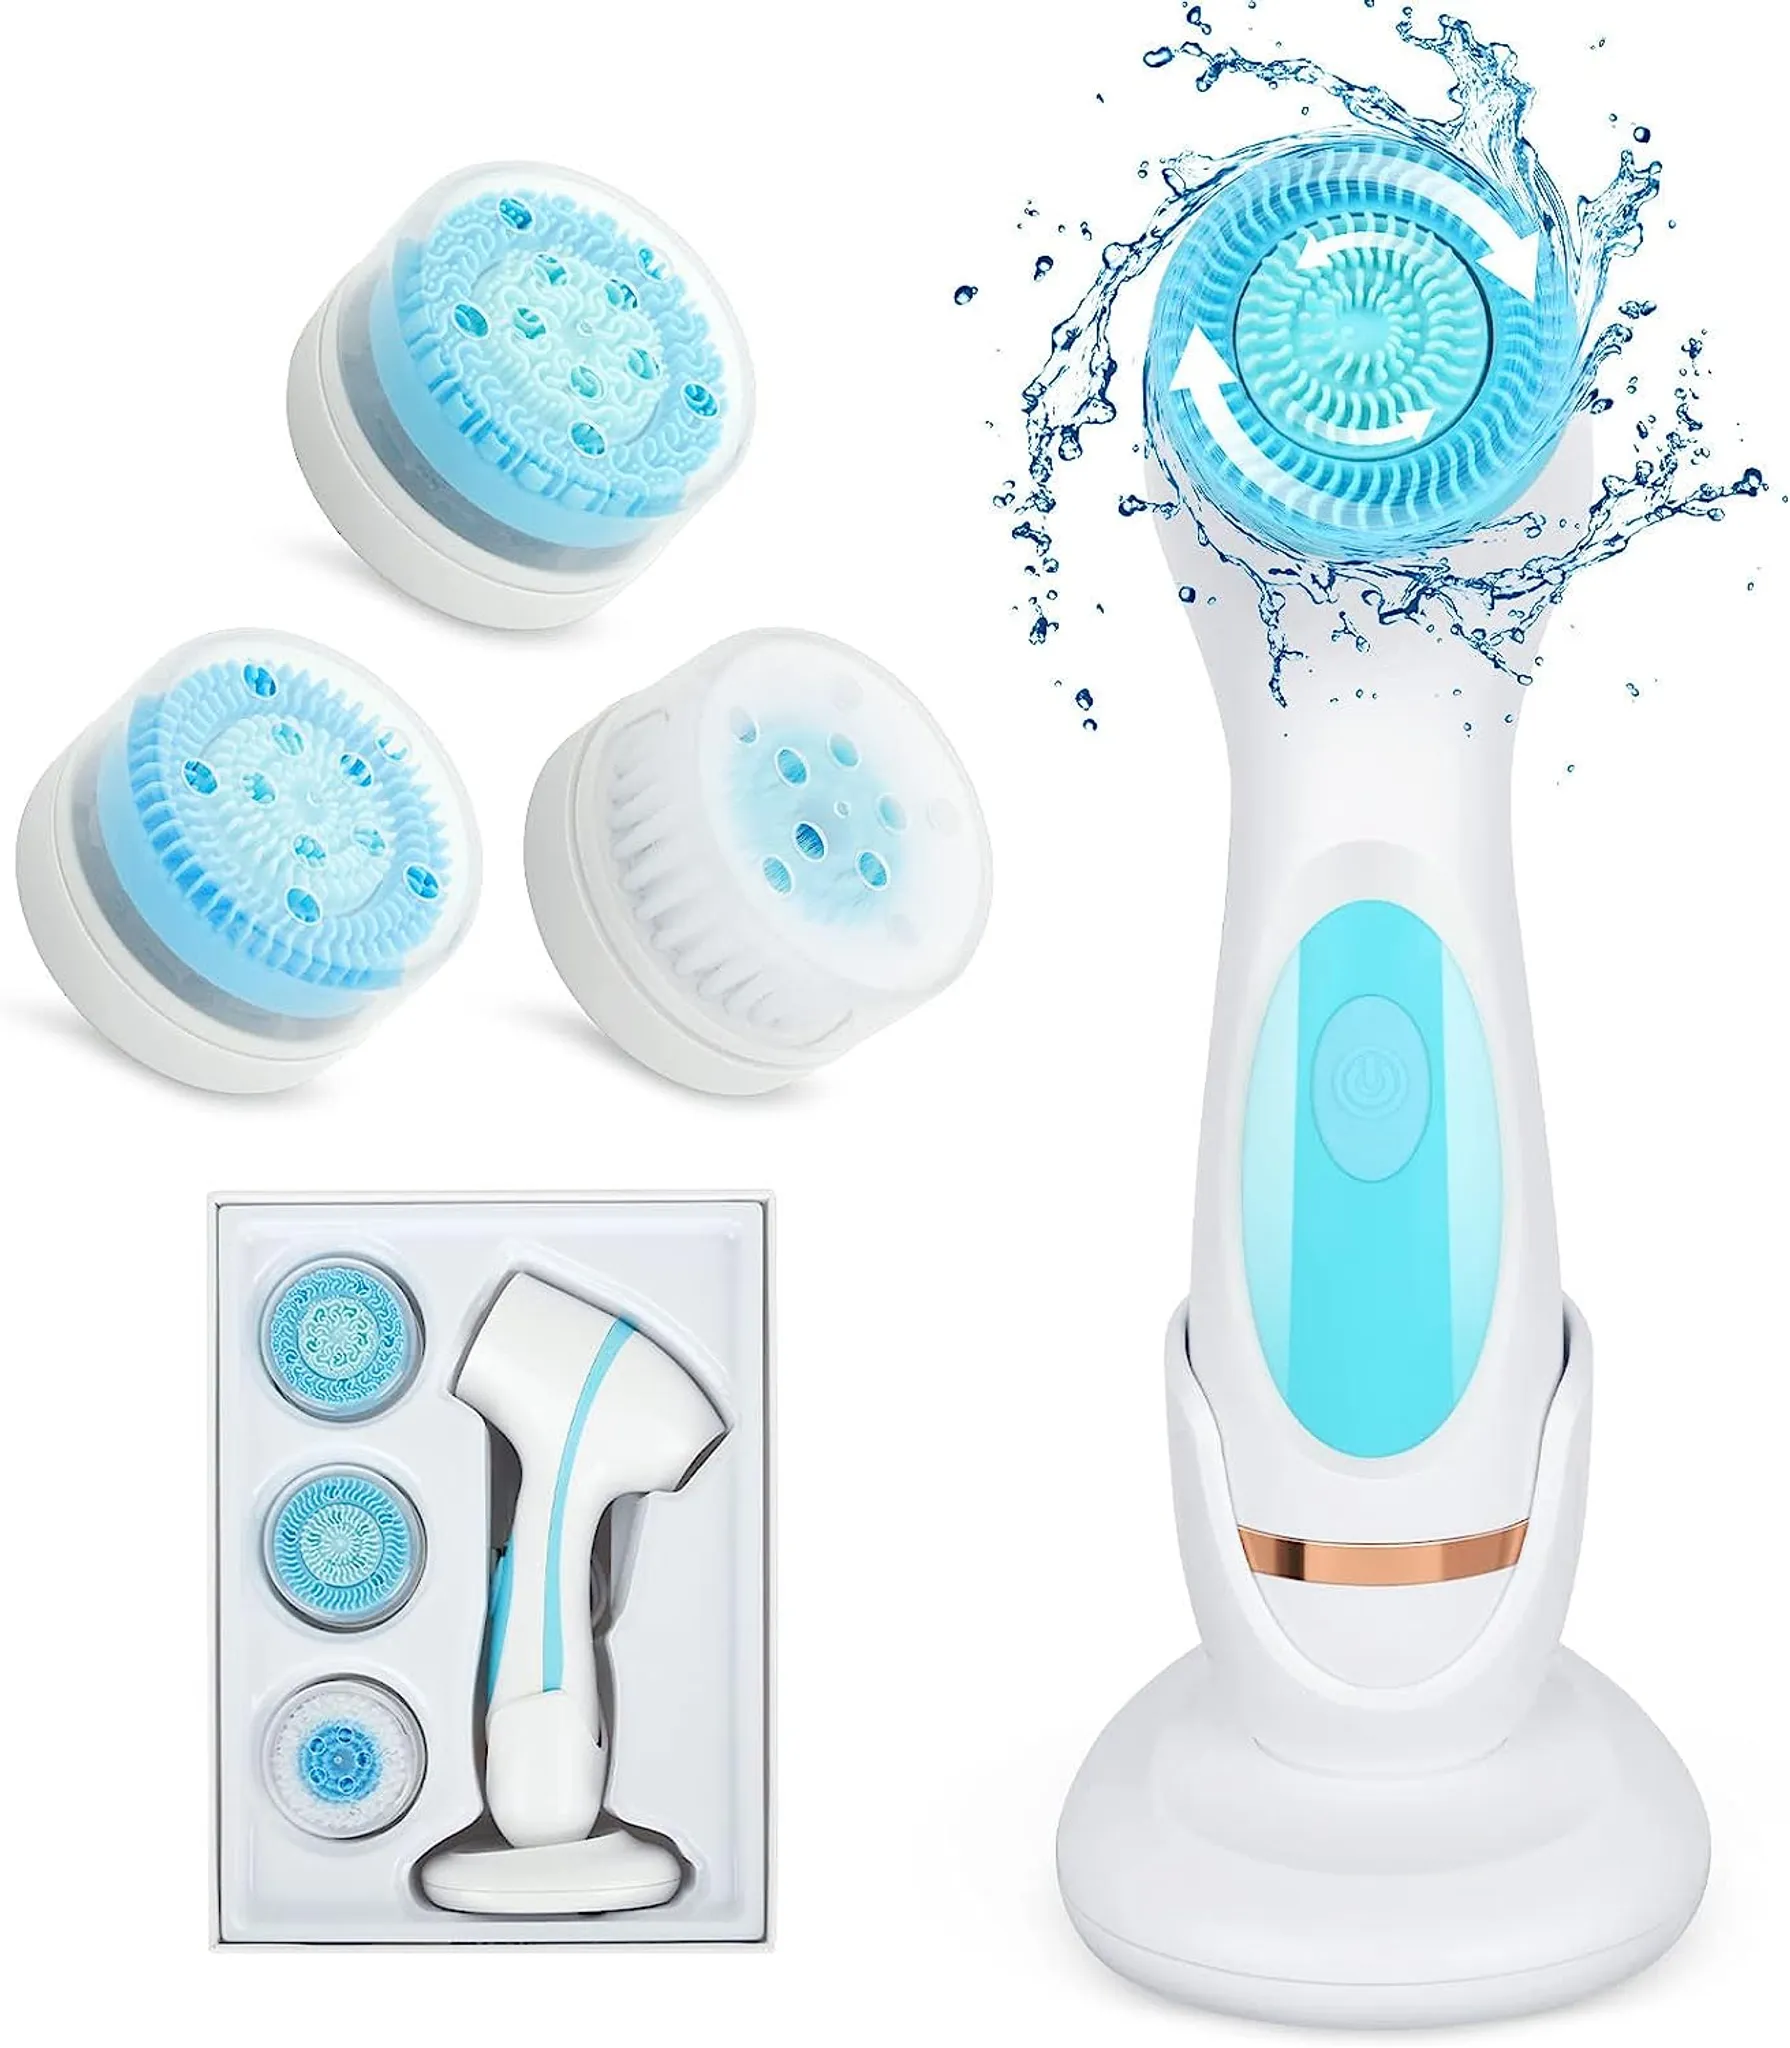 Gesichtsreinigungsbürste,Wasserdichte Elektrische Gesichtsbürste  Zweiwege-Rotation mit 3 Bürstenköpfen USB aufladbares  Gesichtsreinigungsgerät (Blau)